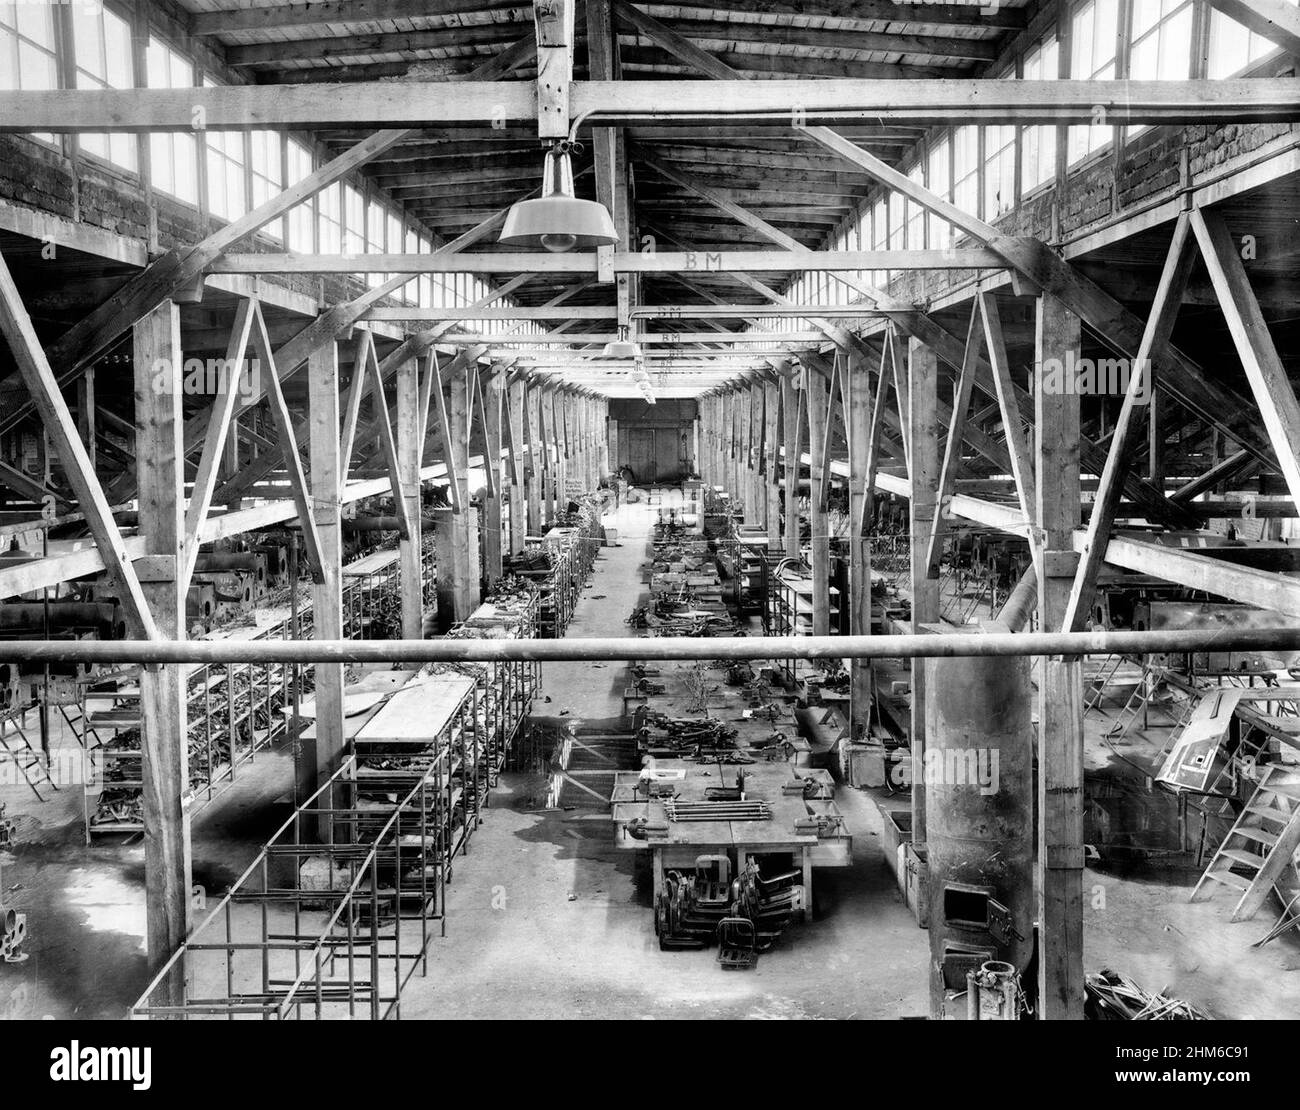 Verlassene Flugzeugfabrik in Flossenburg, fotografiert vom US Army Signal Corps nach der Befreiung des Lagers. Vermutlich die, die Messerschmitt seit 1943 im Lager betreibt, beschäftigte die Fabrik Mitte 1944 5.700 Arbeiter Stockfoto